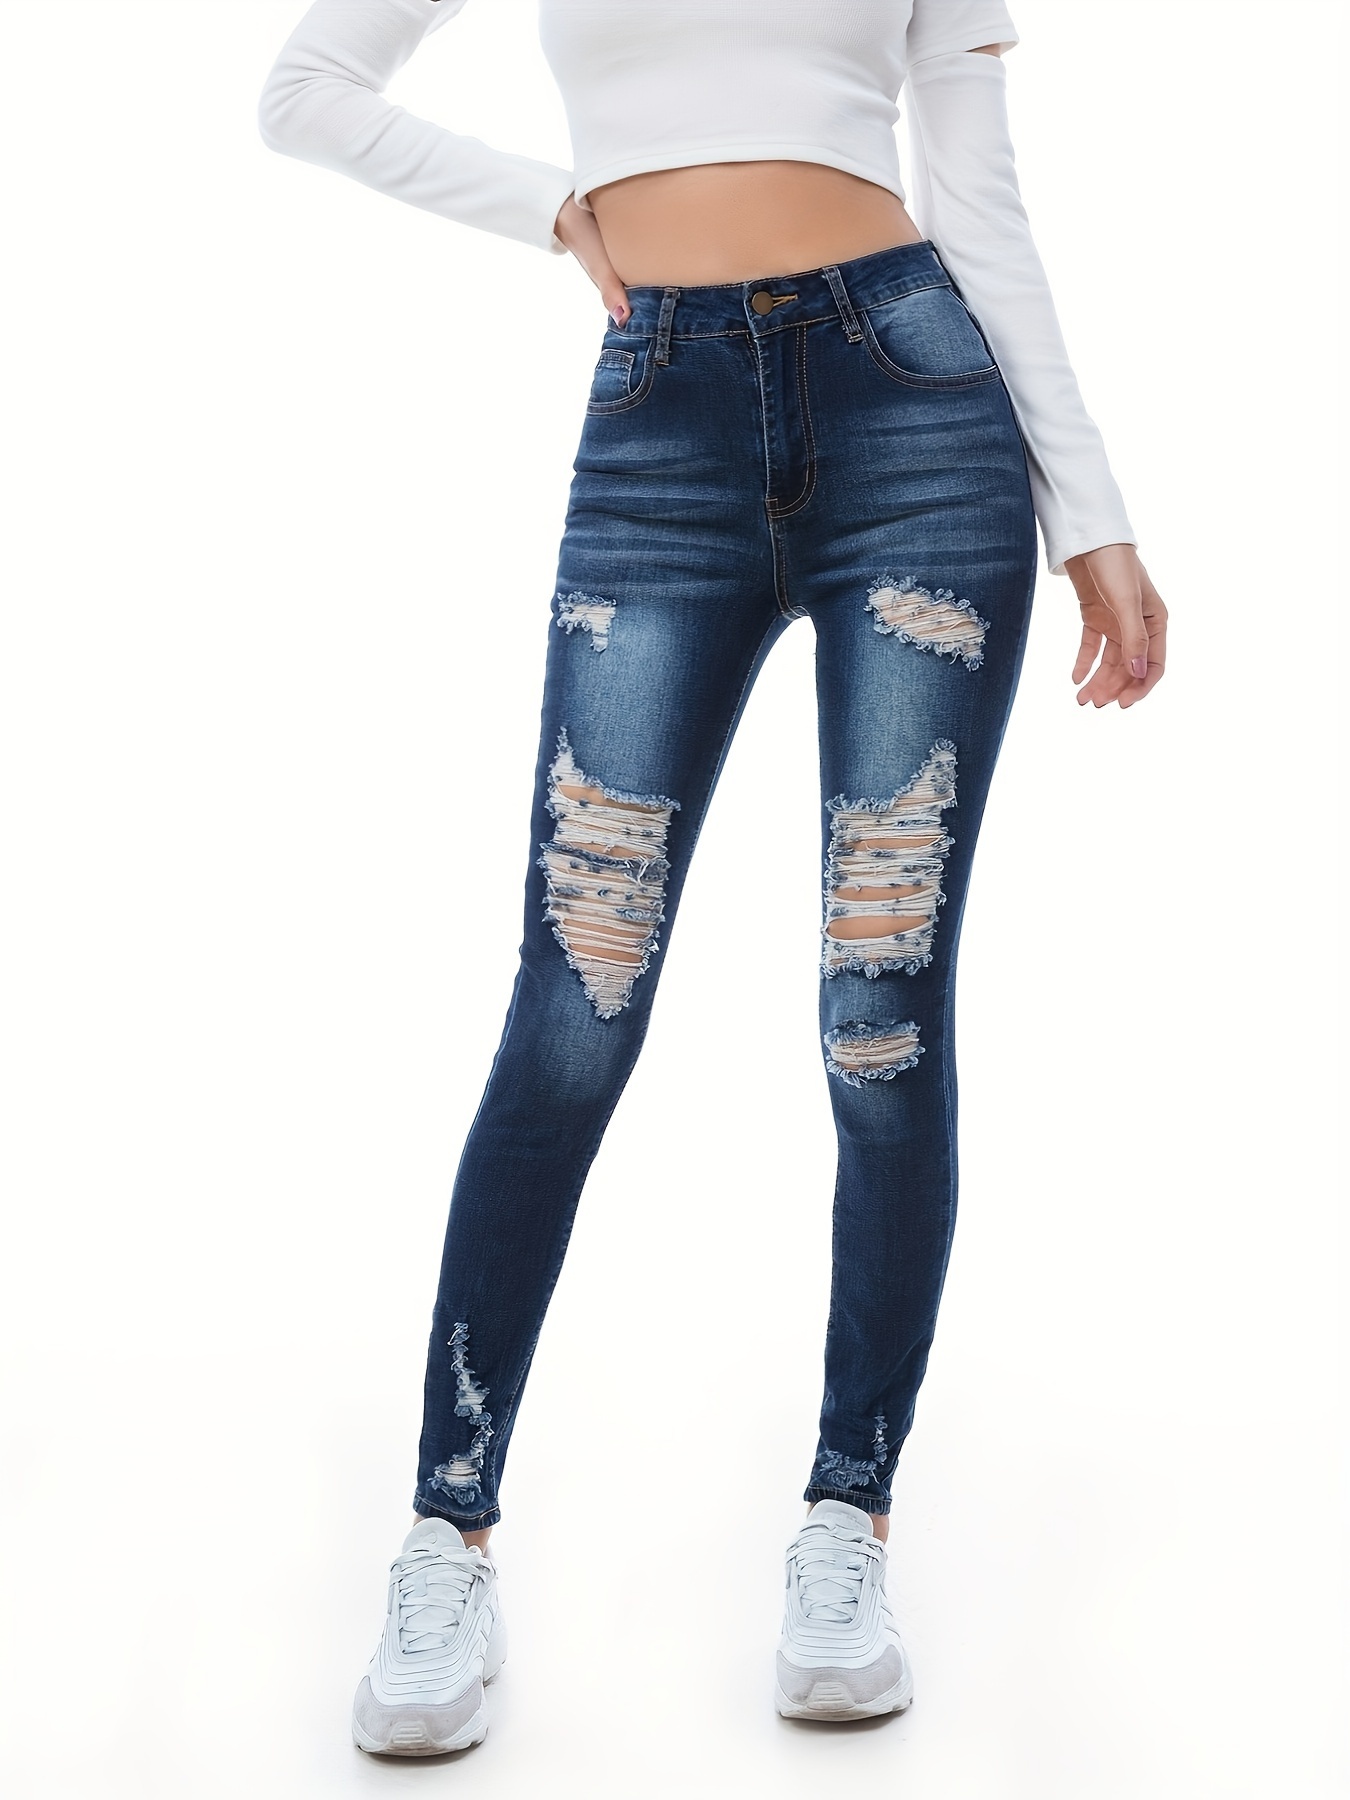 Jeans ajustados de talle alto desgastados y elásticos, pantalones de  mezclilla rasgados negros de cintura alta, jeans y ropa de mezclilla para  mujer